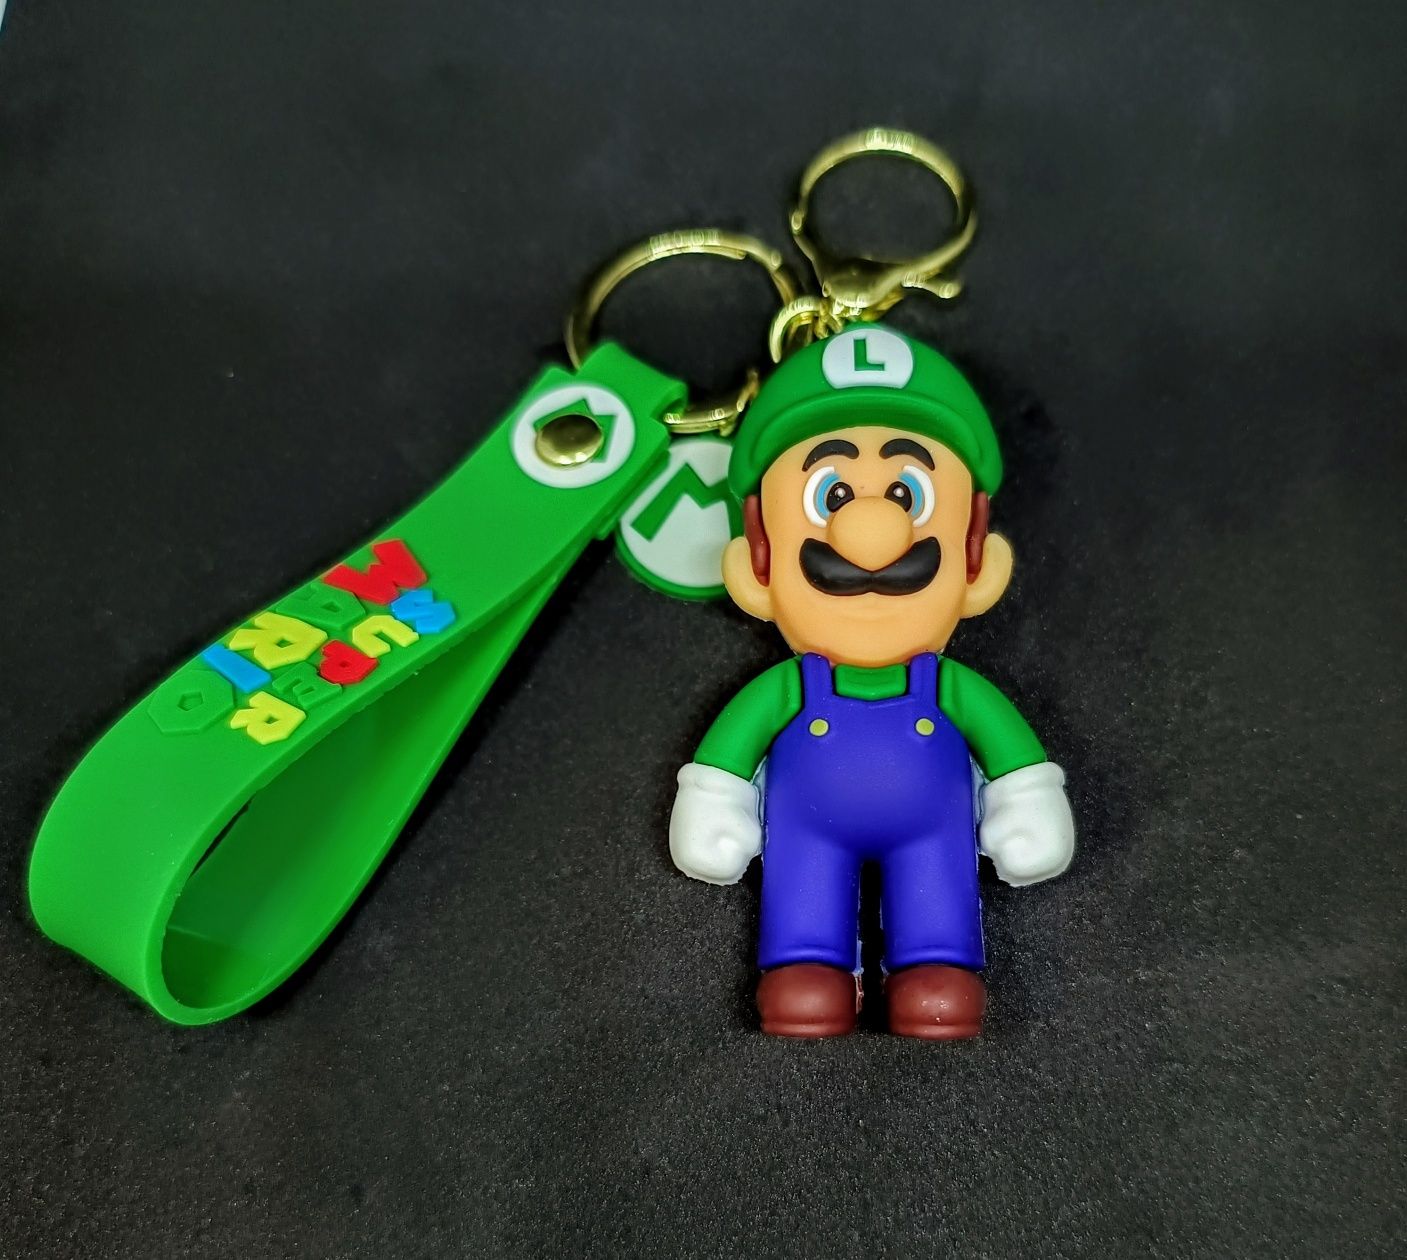 Breloc Luigi - Super Mario